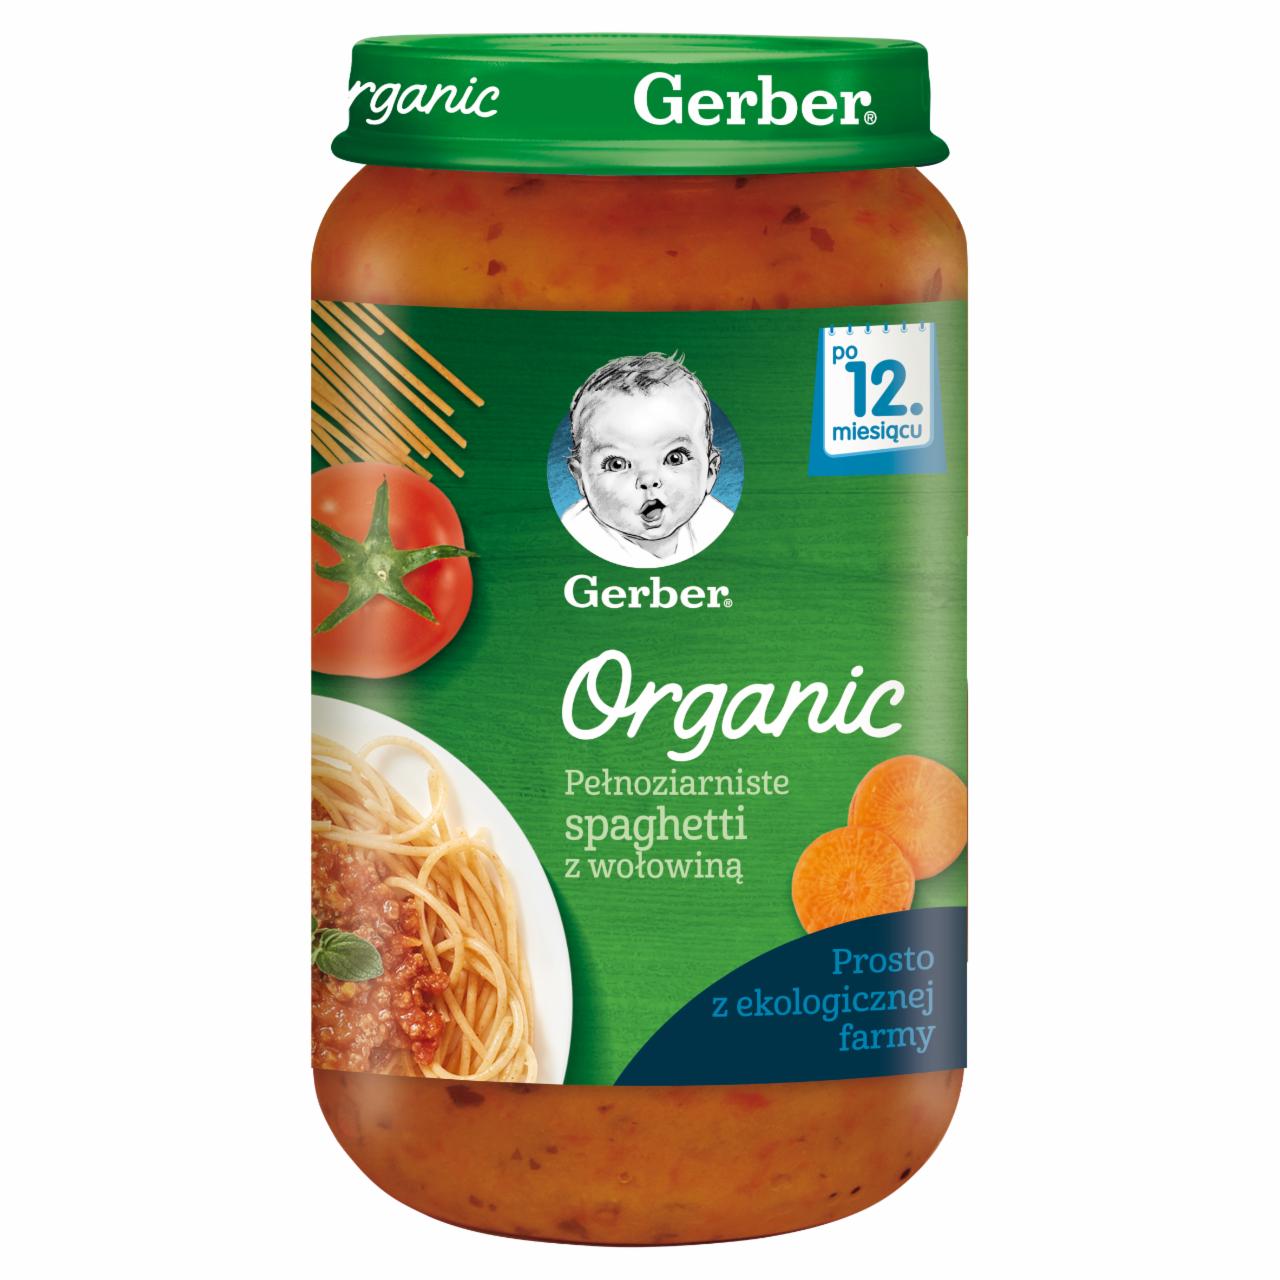 Zdjęcia - Gerber Organic Pełnoziarniste spaghetti z wołowiną dla dzieci po 12. miesiącu 250 g